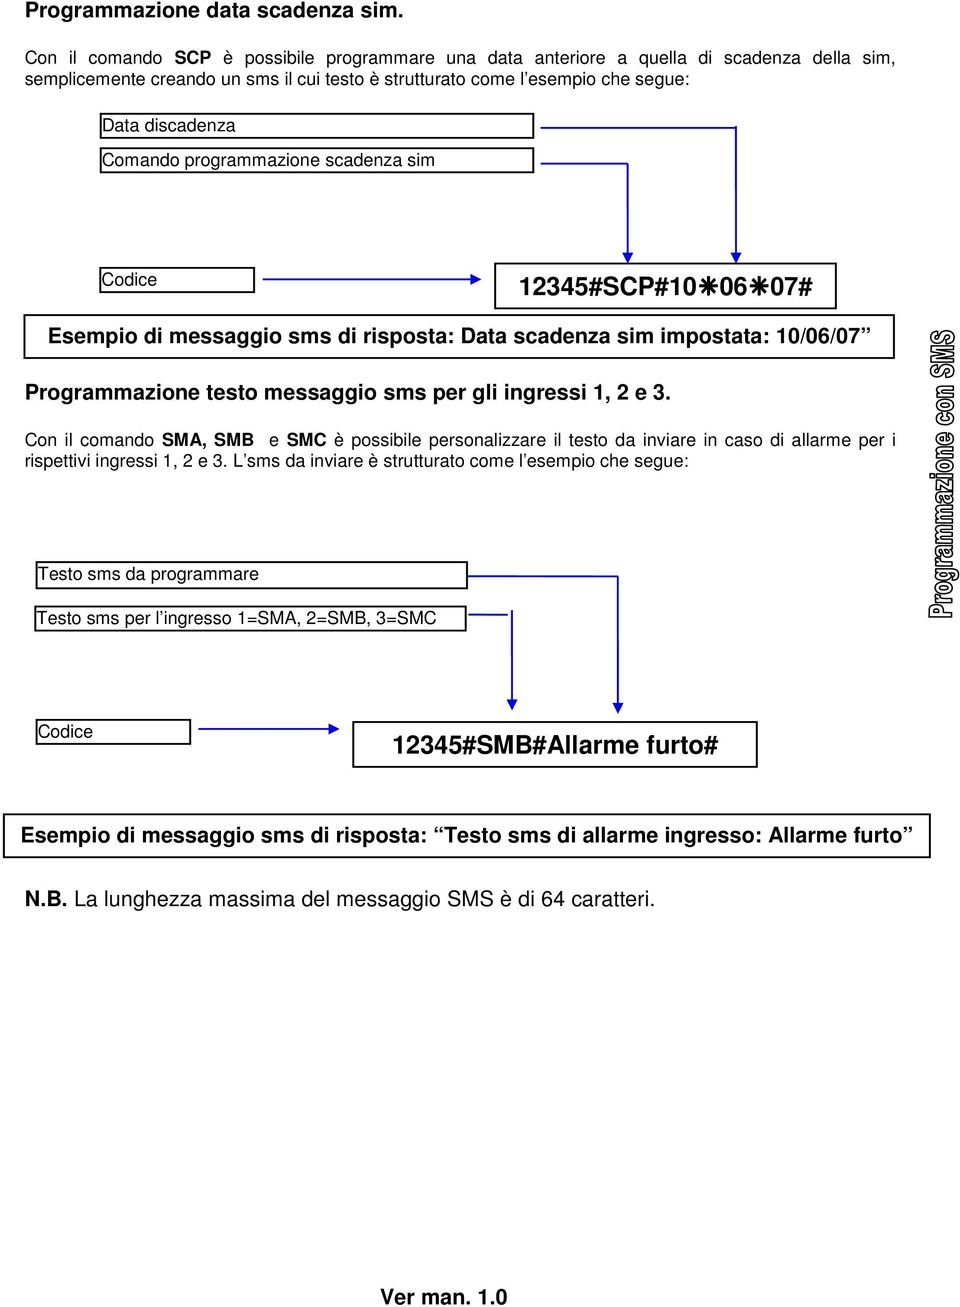 programmazione scadenza sim Codice 12345#SCP#10 06 07# Esempio di messaggio sms di risposta: Data scadenza sim impostata: 10/06/07 Programmazione testo messaggio sms per gli ingressi 1, 2 e 3.